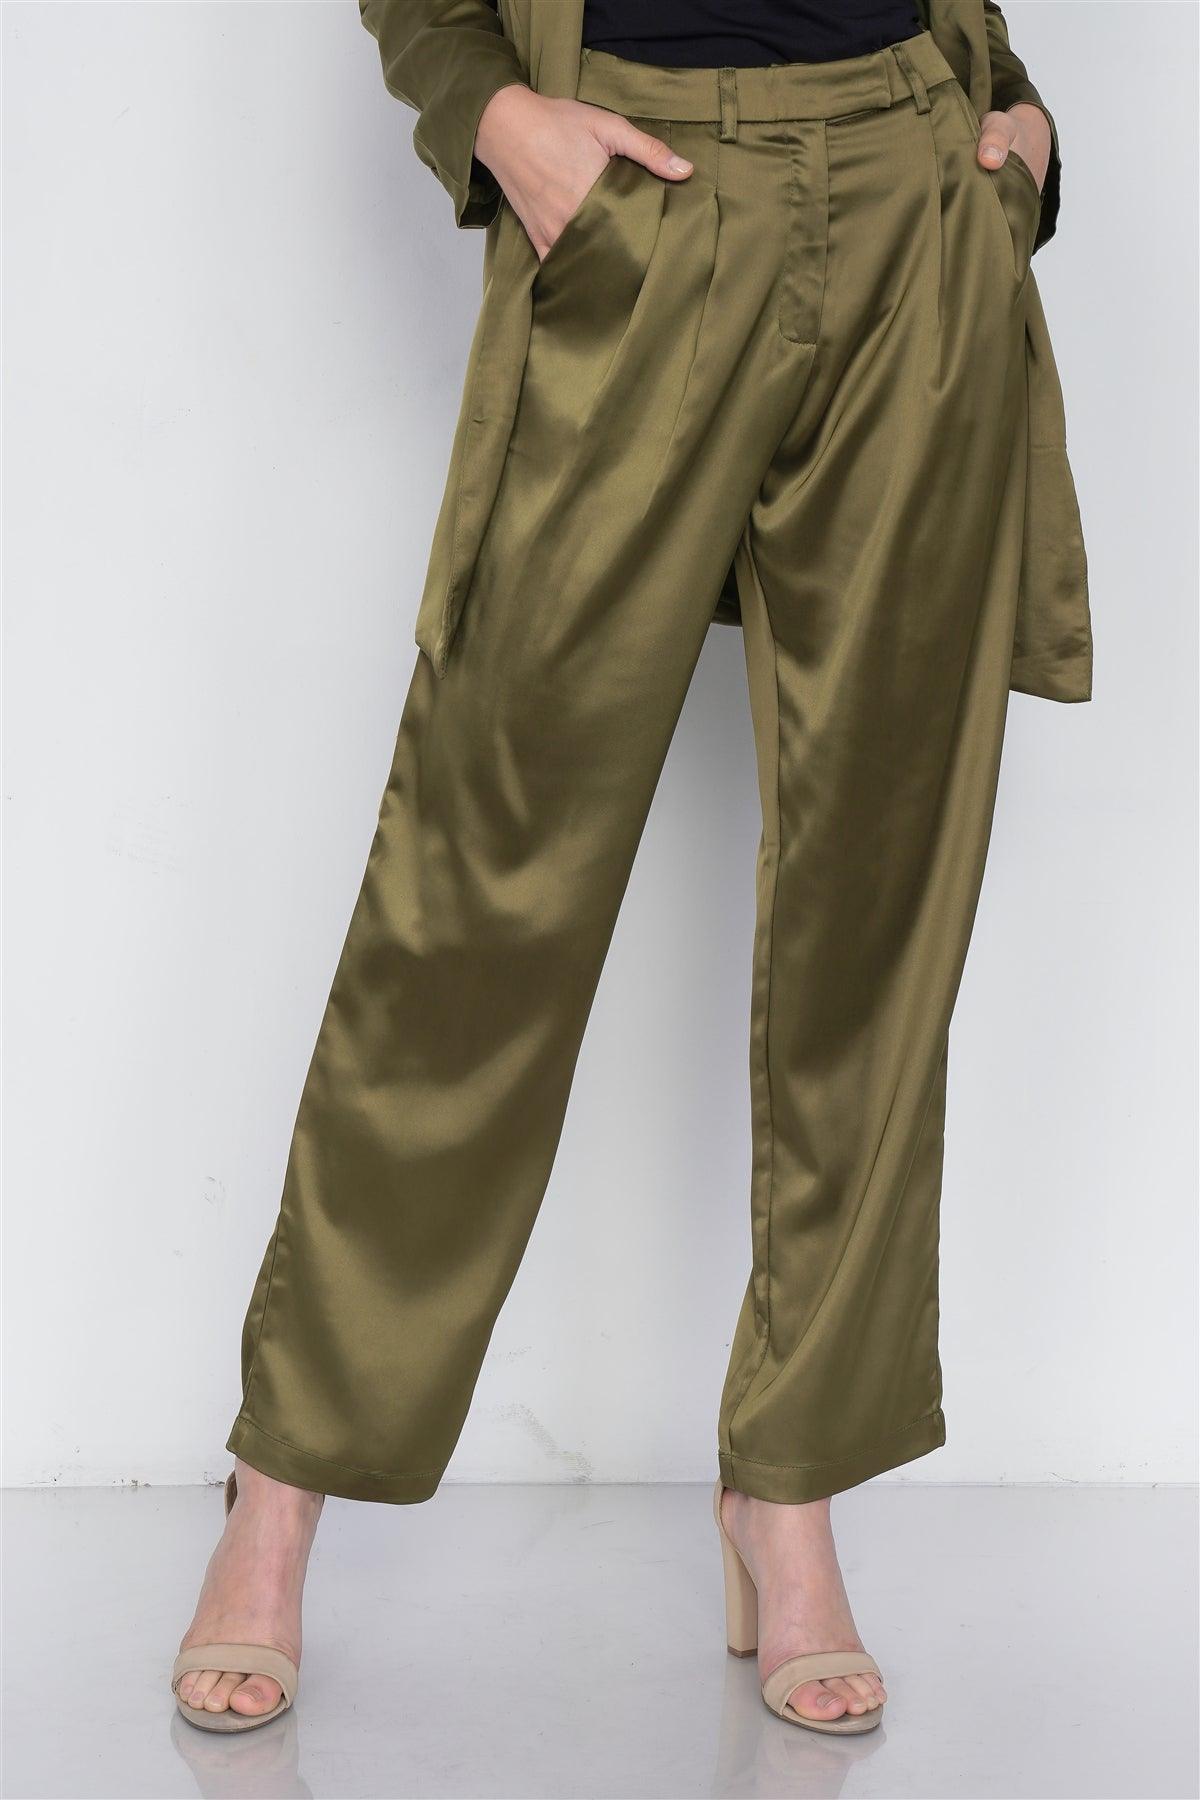 Olive Silk Boyfriend Blazer & Chic High-Waist Pleated Ankle Pant Set